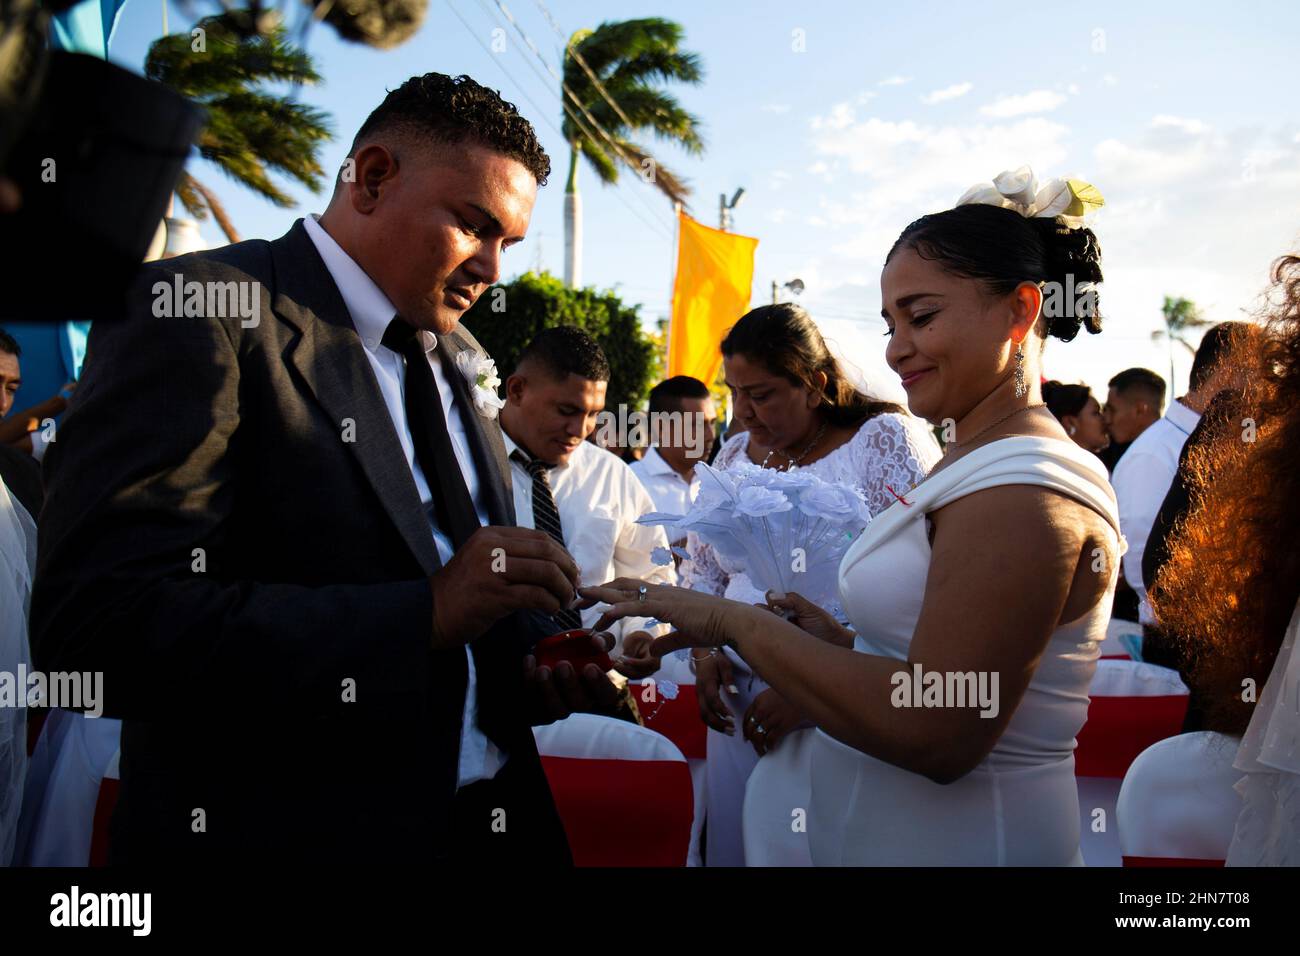 Un hombre pone un anillo de boda en el dedo de su novia durante una  ceremonia de boda masiva el día de San Valentín en Managua, Nicaragua el 14  de febrero de